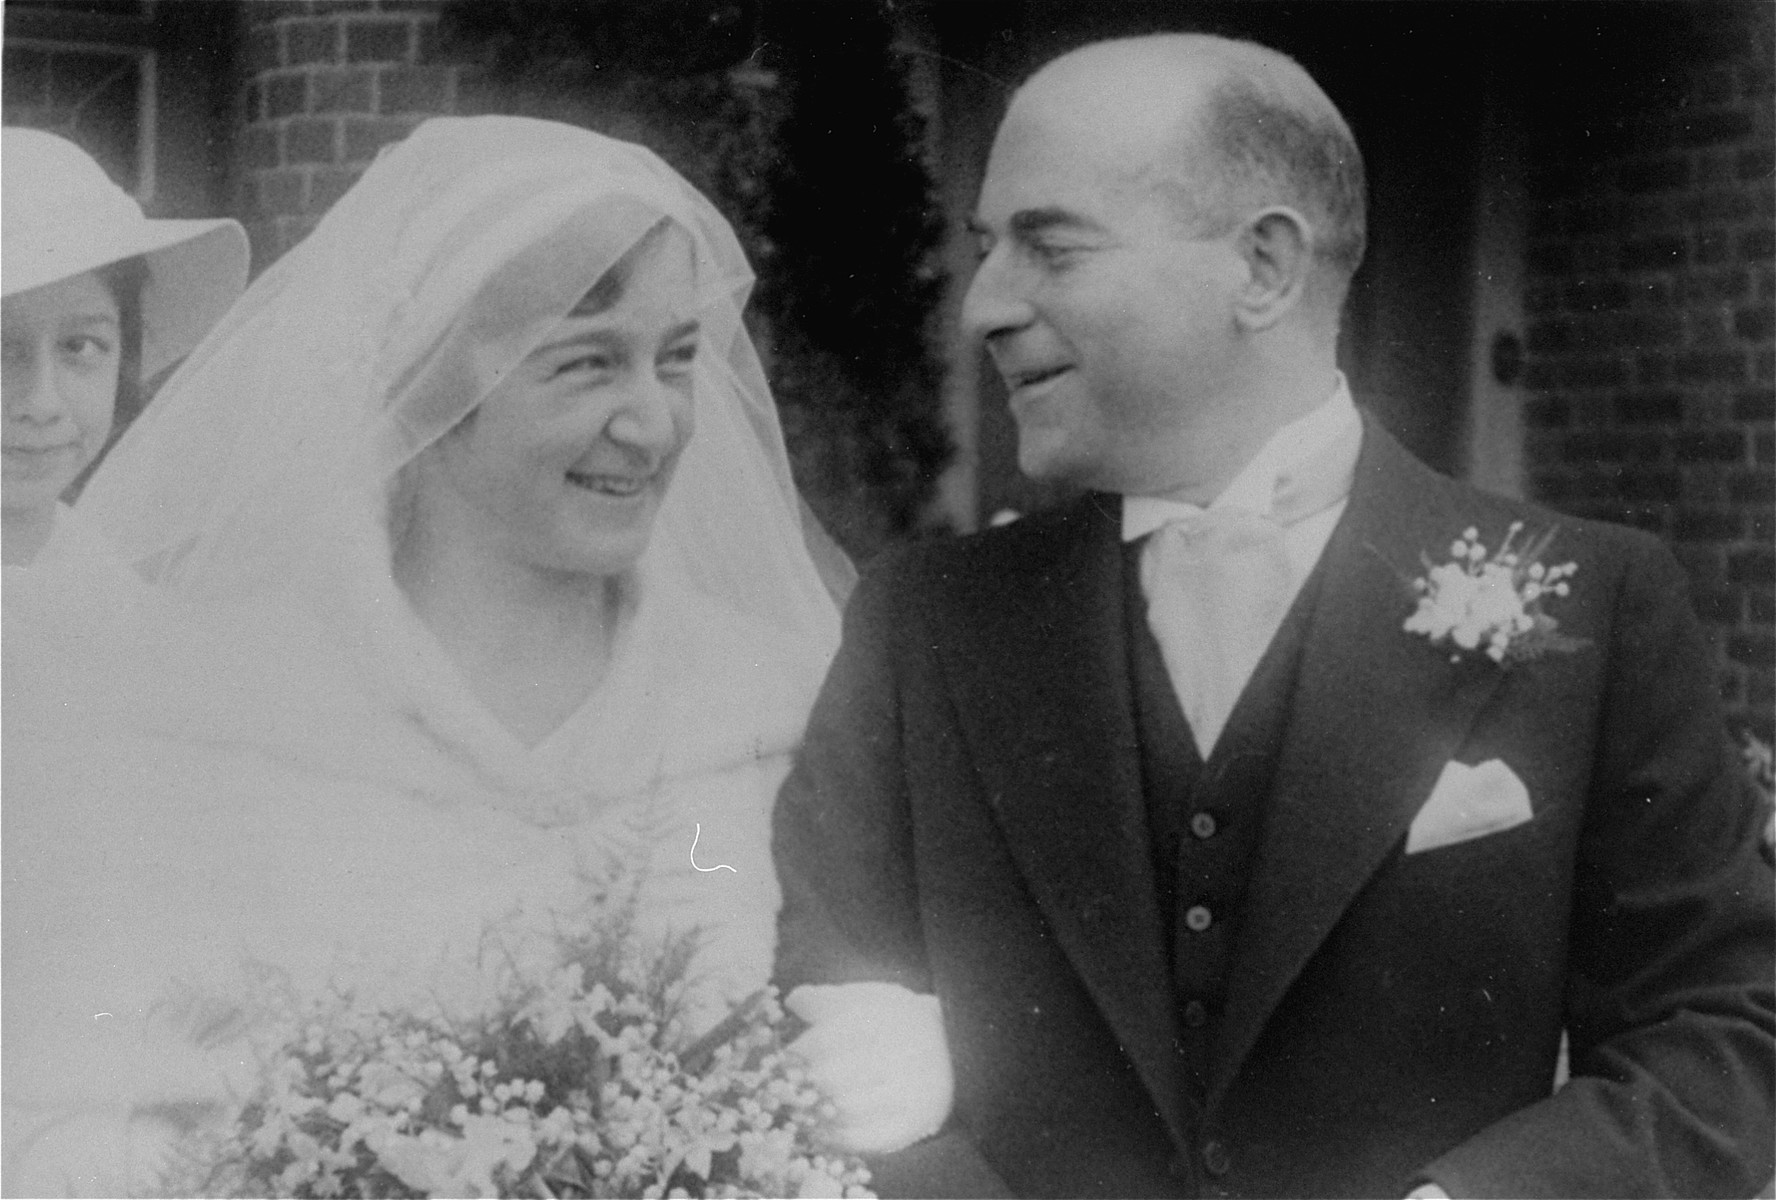 Portrait of the Dutch Jewish couple, Hilde Sluizer and Gerrit Verdoner, on their wedding day.